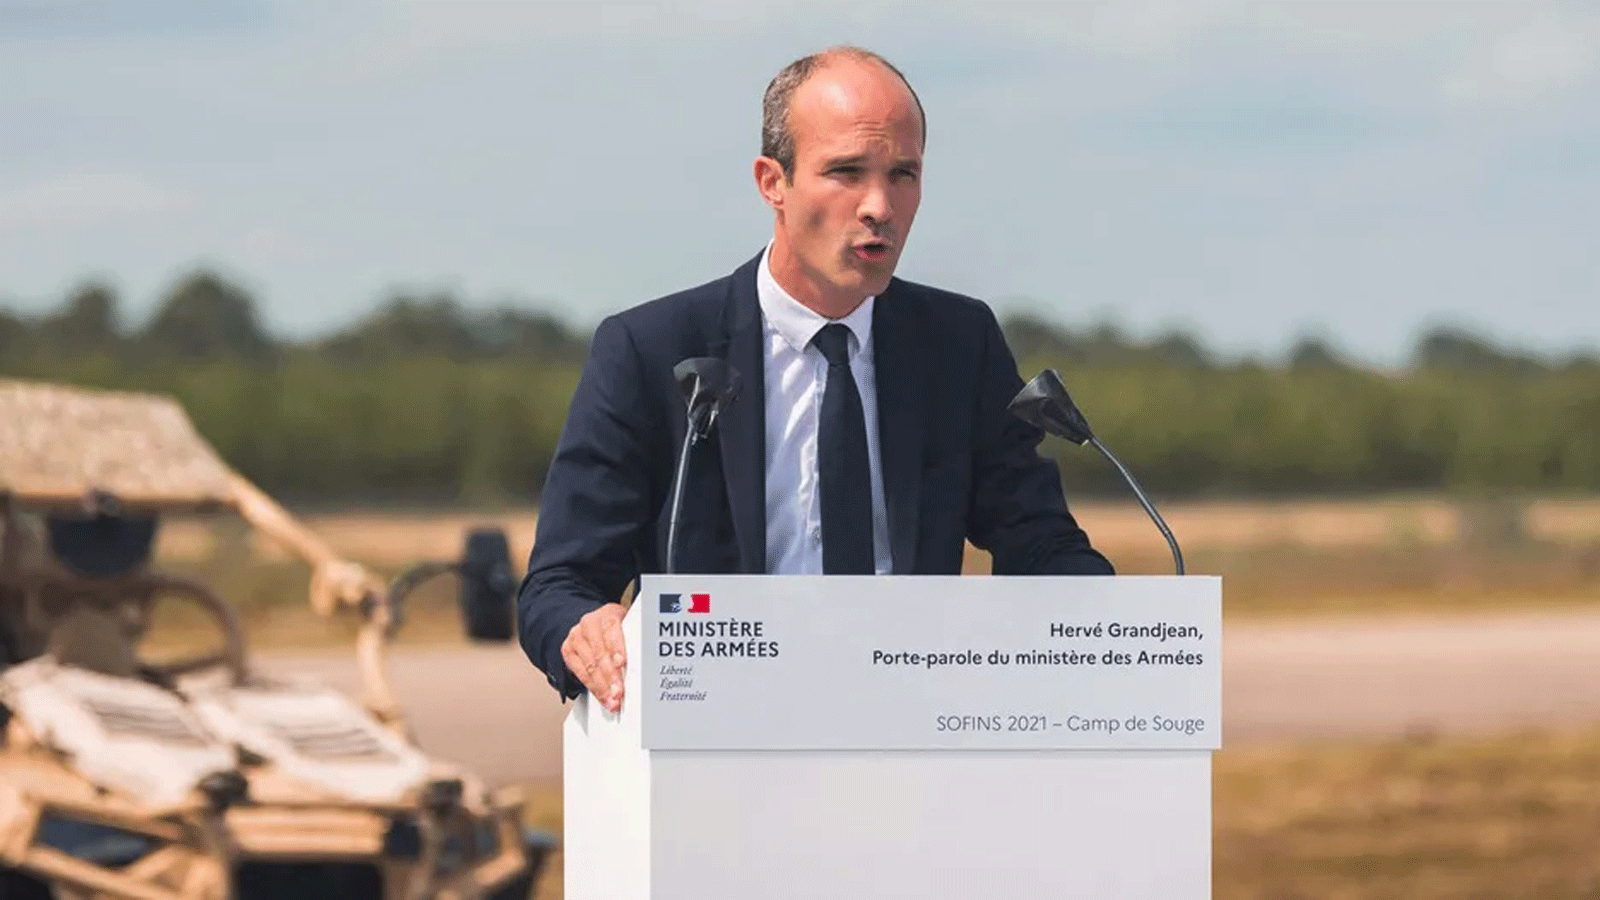  المتحدث باسم وزارة القوات المسلحة، إيرفيه غراندغجين، خلال ندوة شبكة الابتكار لقوات العمليات الخاصة (SOFINS) في Martignas-sur-Jalle ، في 1 حزيران/ يونيو 2021.